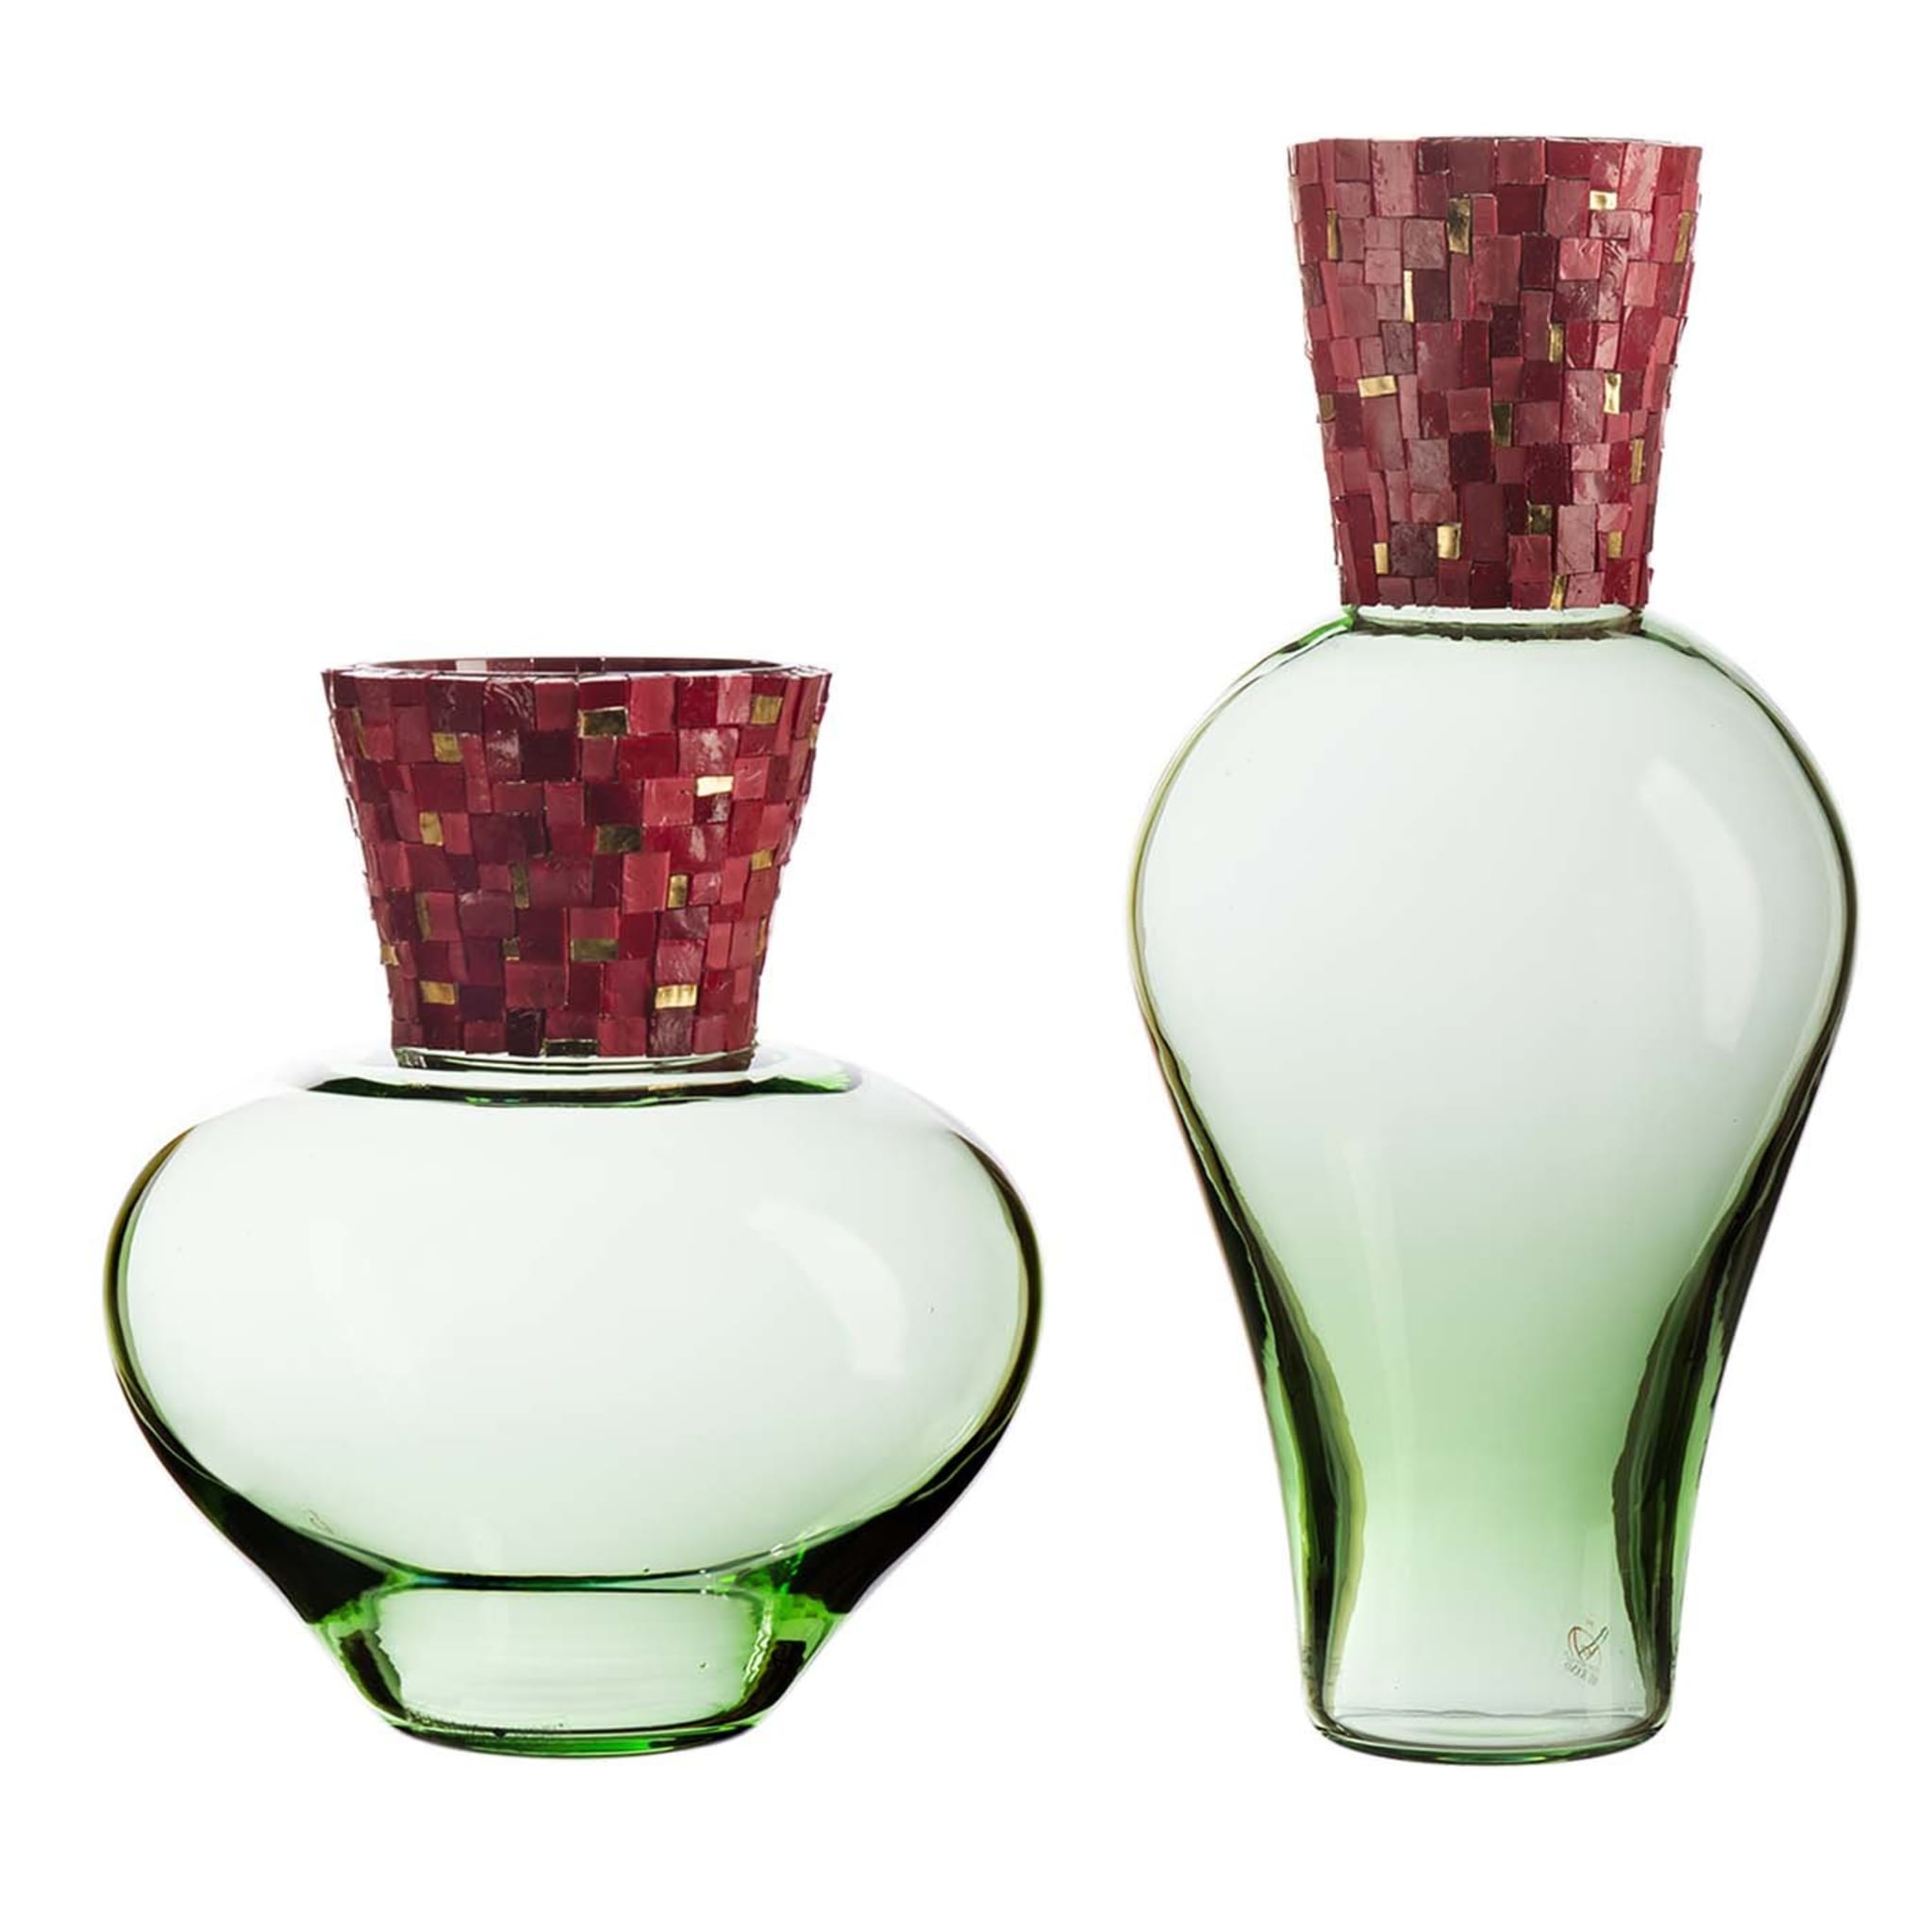 Corona Diadema Vasen Grün und Rot - Hauptansicht